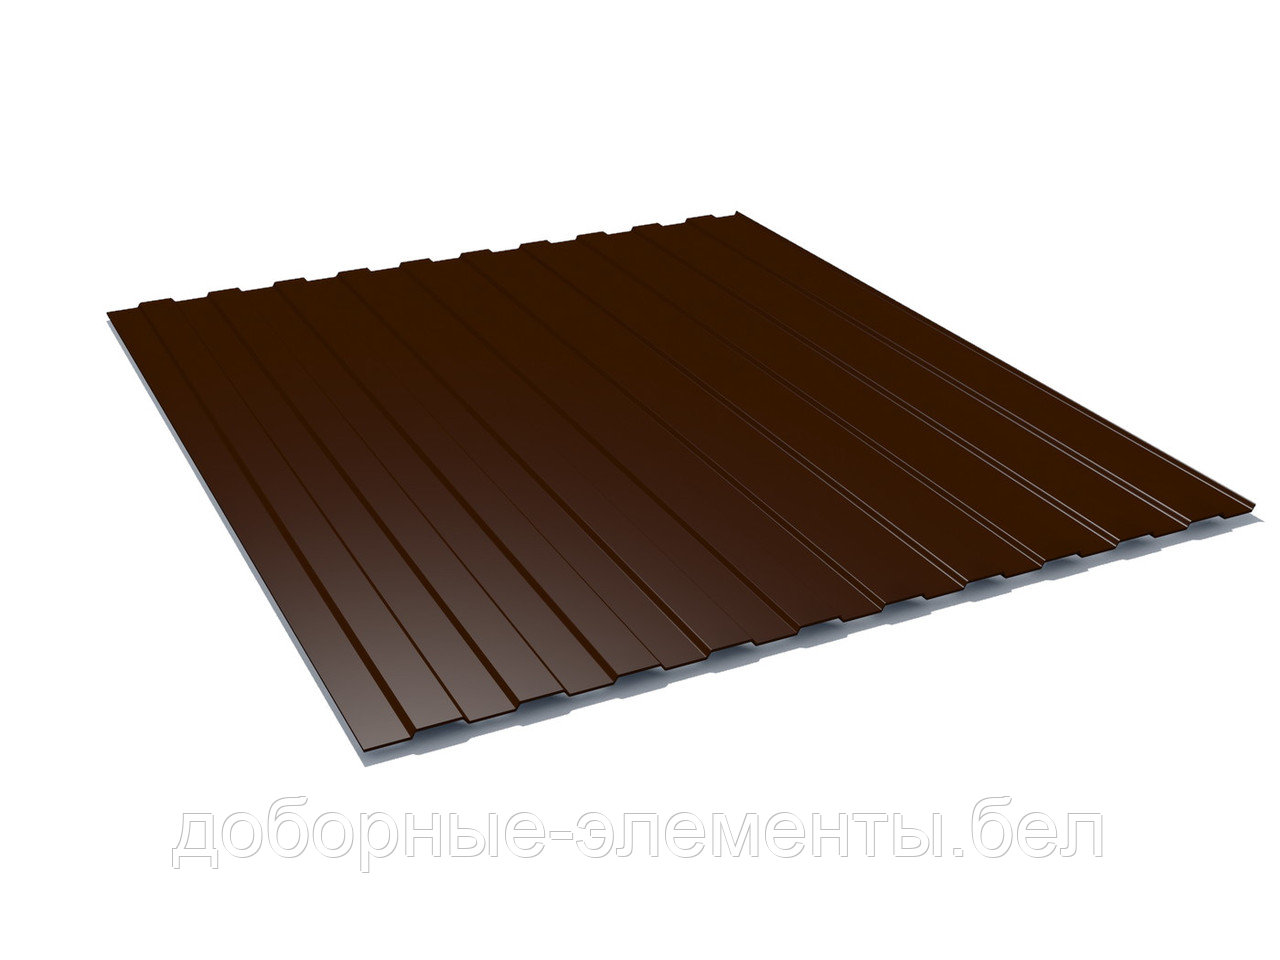 Профлист С8 для забора 1,95 м (шоколадно-коричневый), фото 1